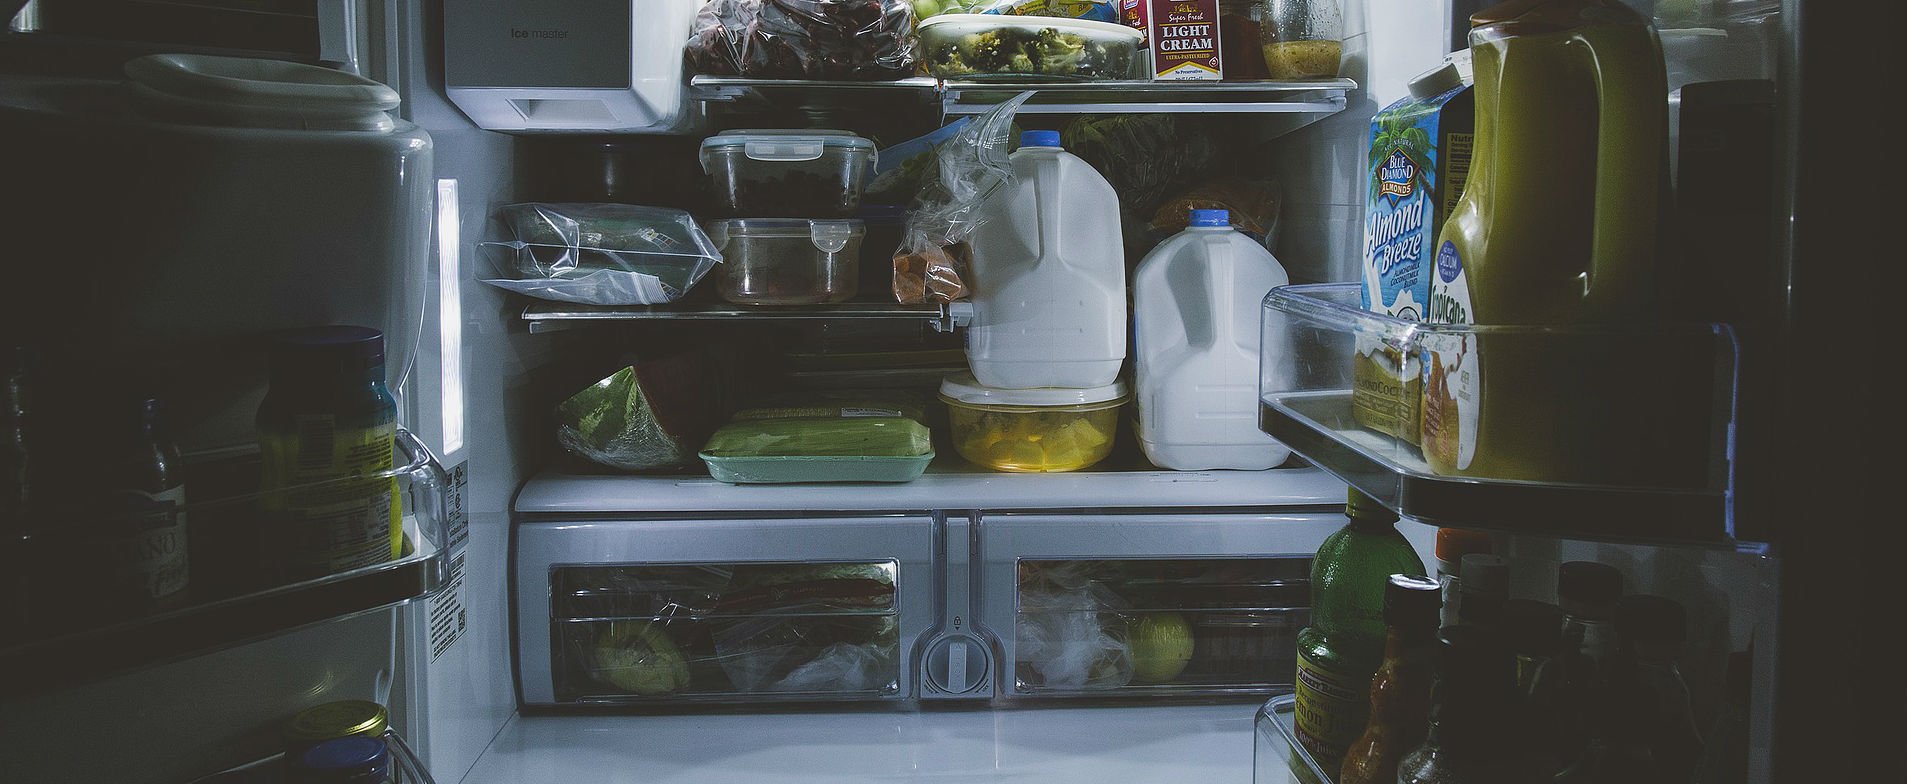 fridge door wide open